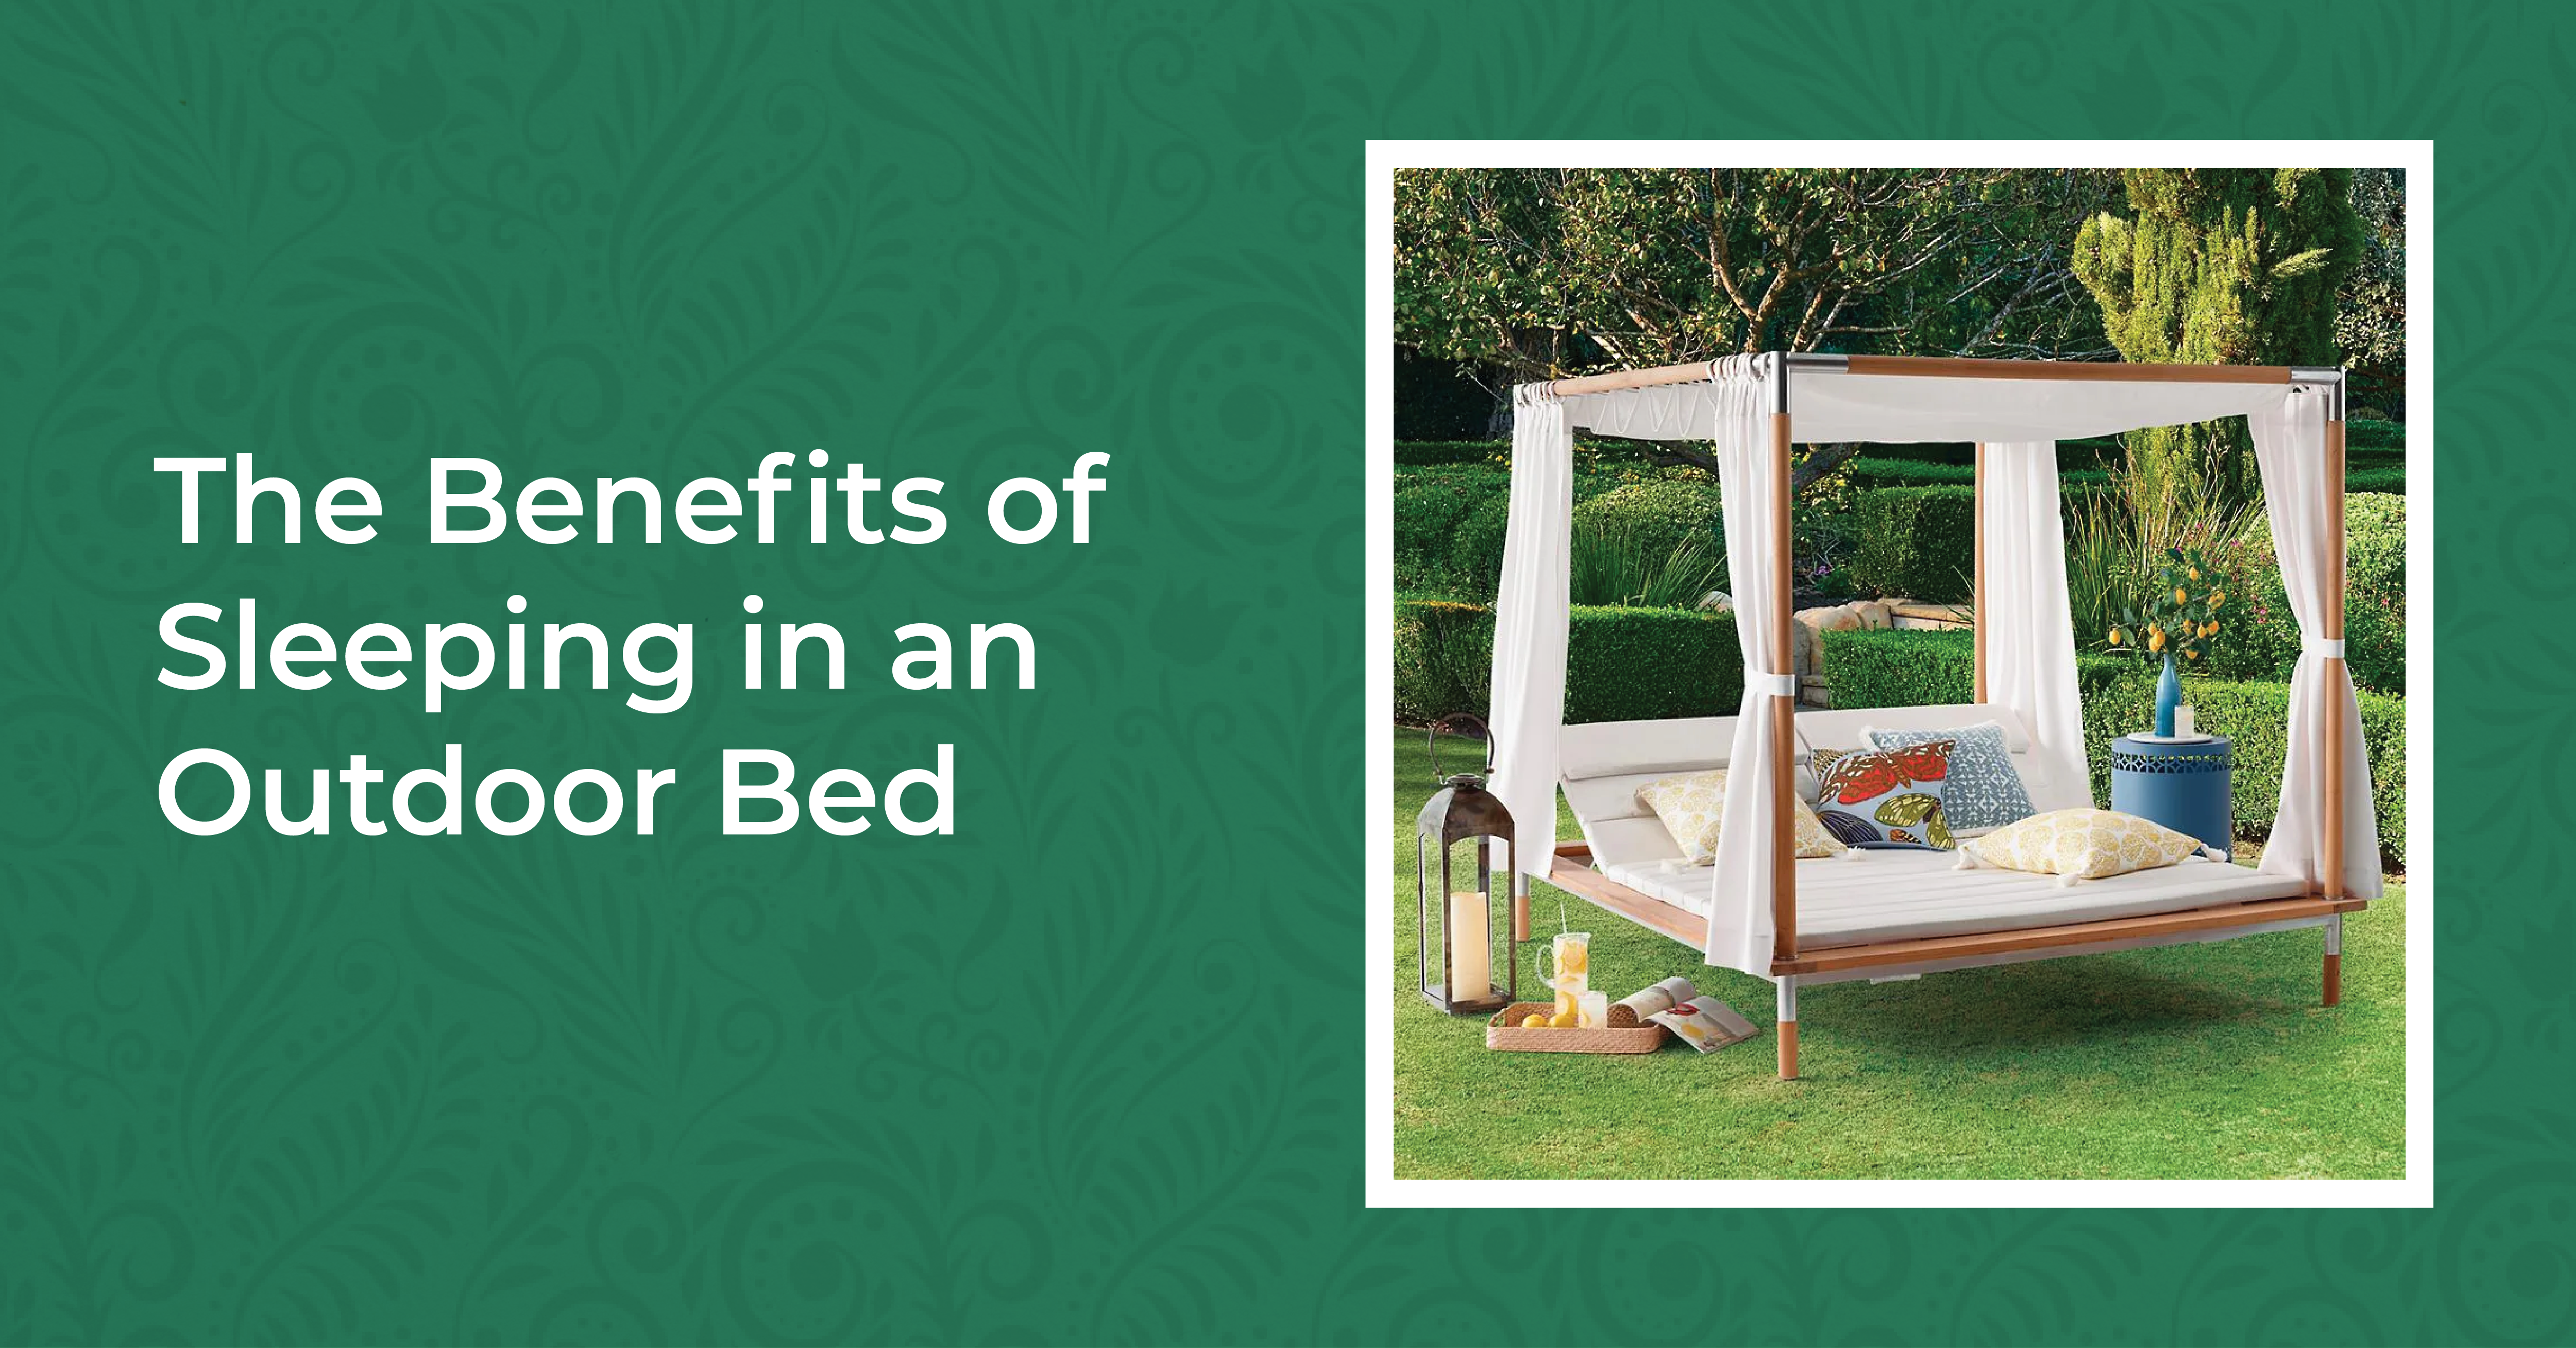 Benefits OF Outdoor Bed 